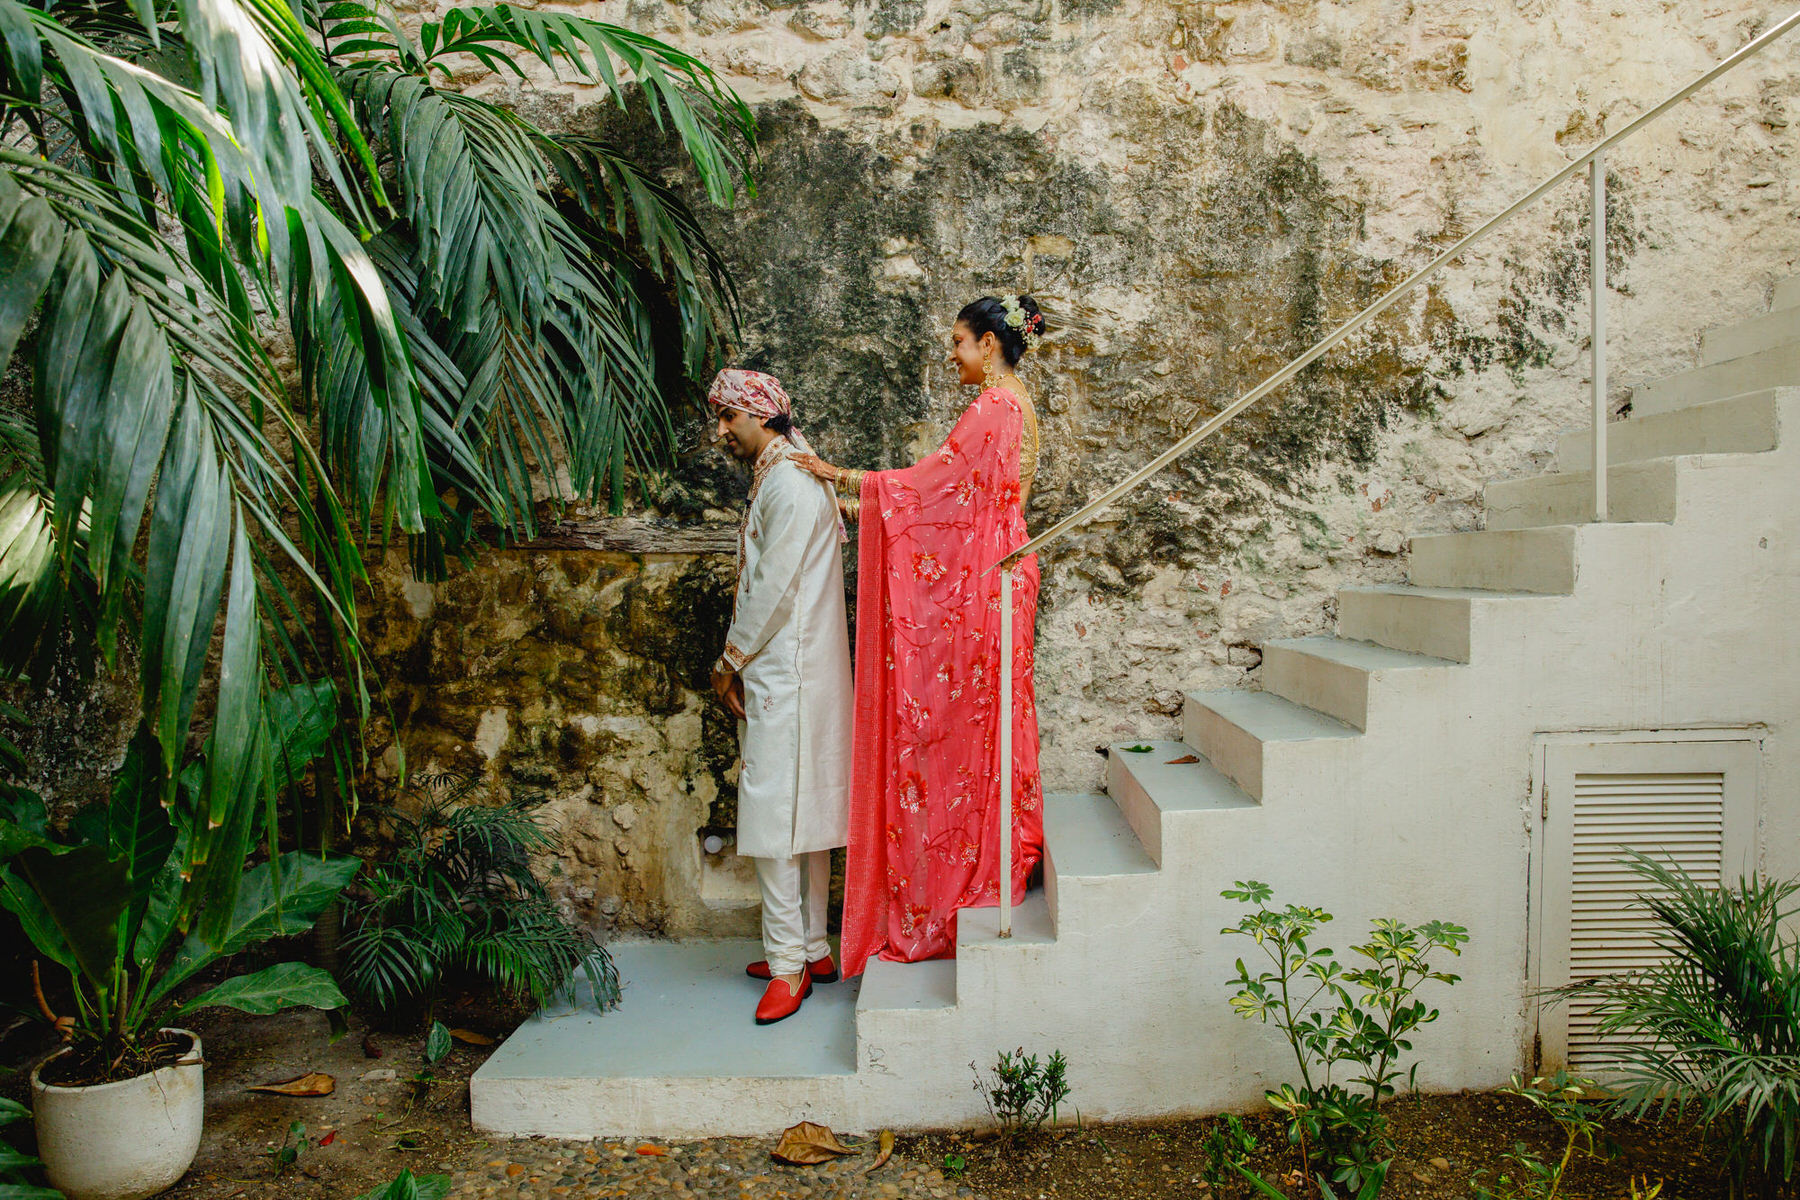 Hindu-Muslim fusion love story in the enchanting backdrop of Cartagena de Indias.